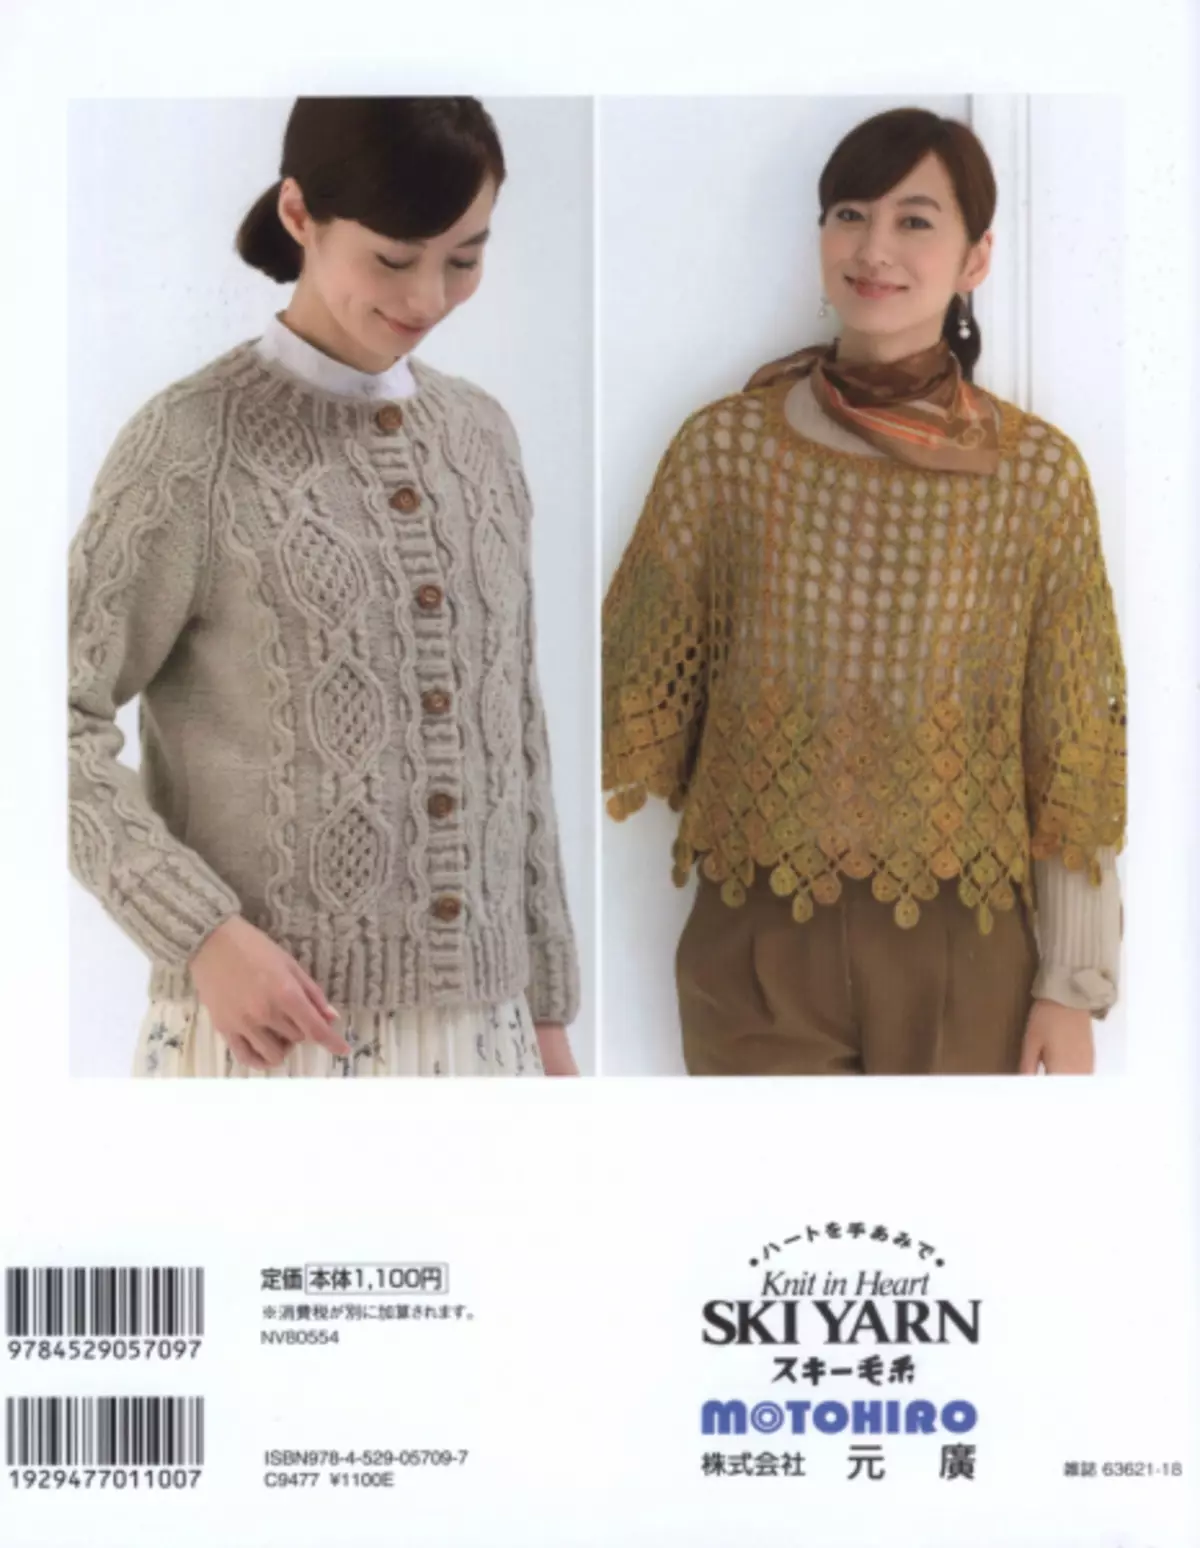 Le magazine japonais "permet de tricoter la série 80554". L'hiver